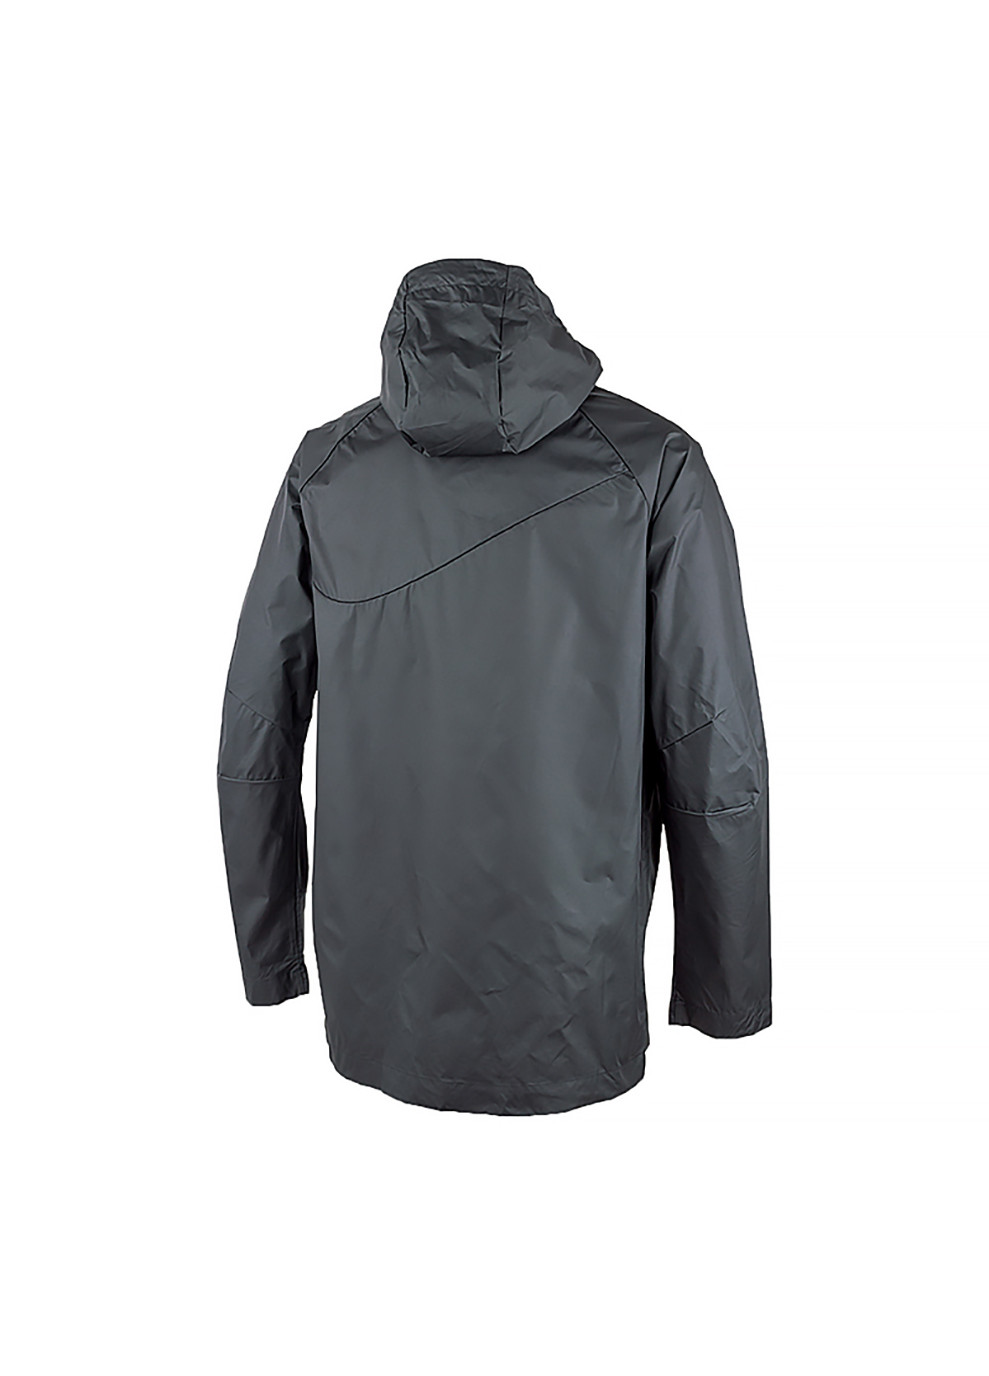 Чорна демісезонна чоловіча куртка m nk sf acdpr hd rain jkt чорний m (dj6301-010 m) Nike